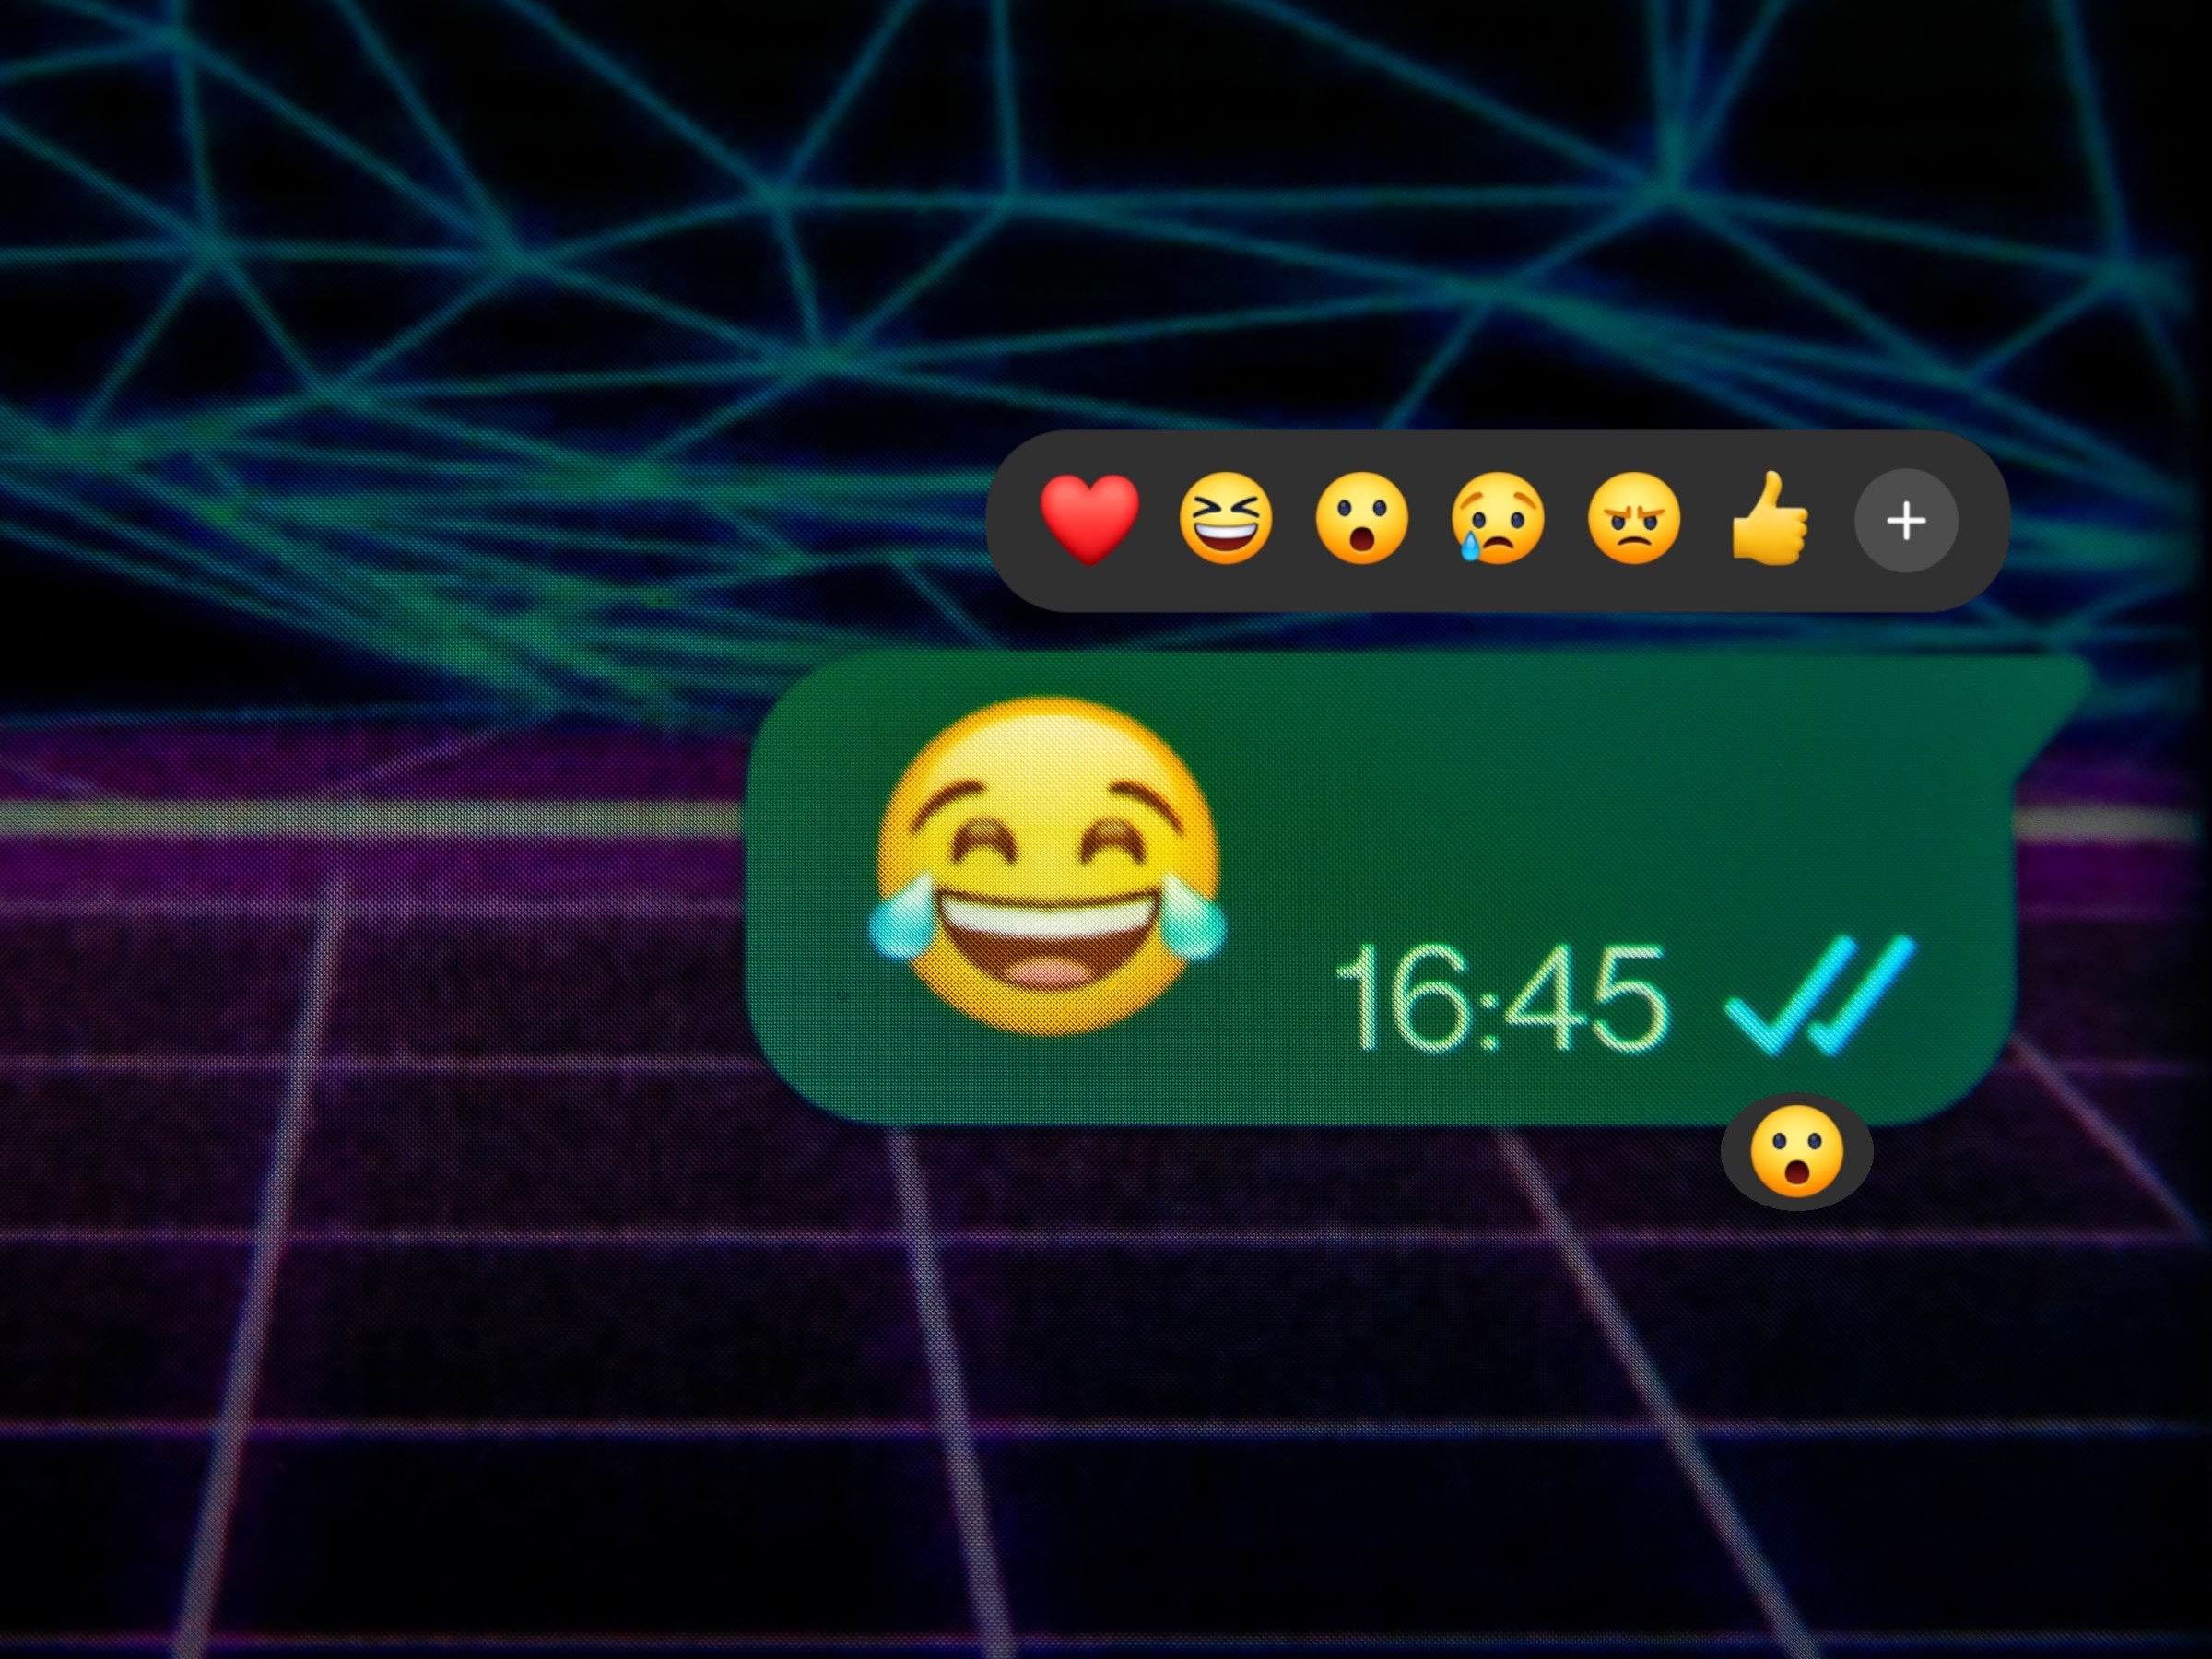 #WhatsApp: So sieht die brandneue Emoji-Funktion aus und so funktioniert sie